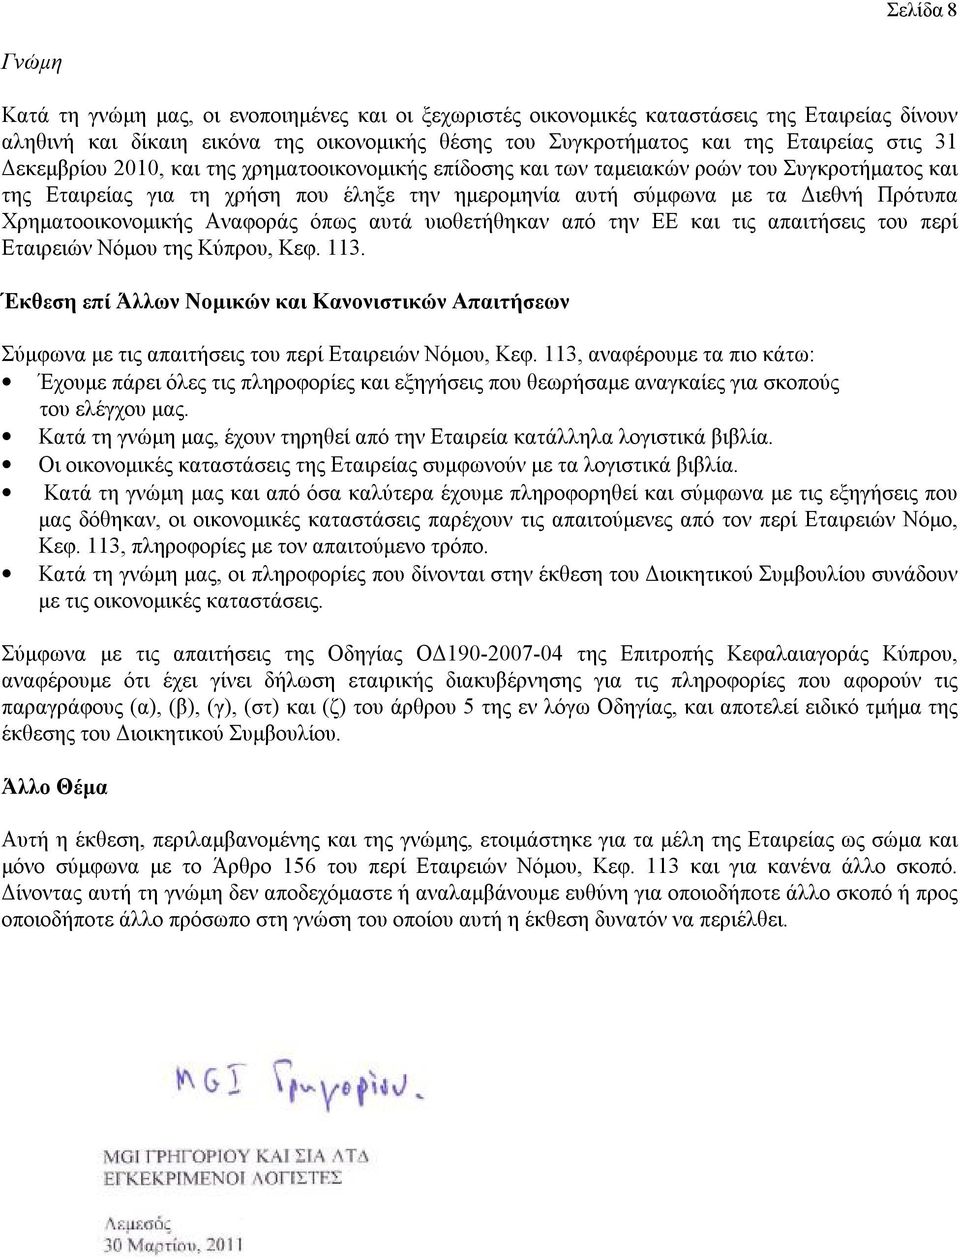 Χρηματοοικονομικής Αναφοράς όπως αυτά υιοθετήθηκαν από την ΕΕ και τις απαιτήσεις του περί Εταιρειών Νόμου της Κύπρου, Κεφ. 113.